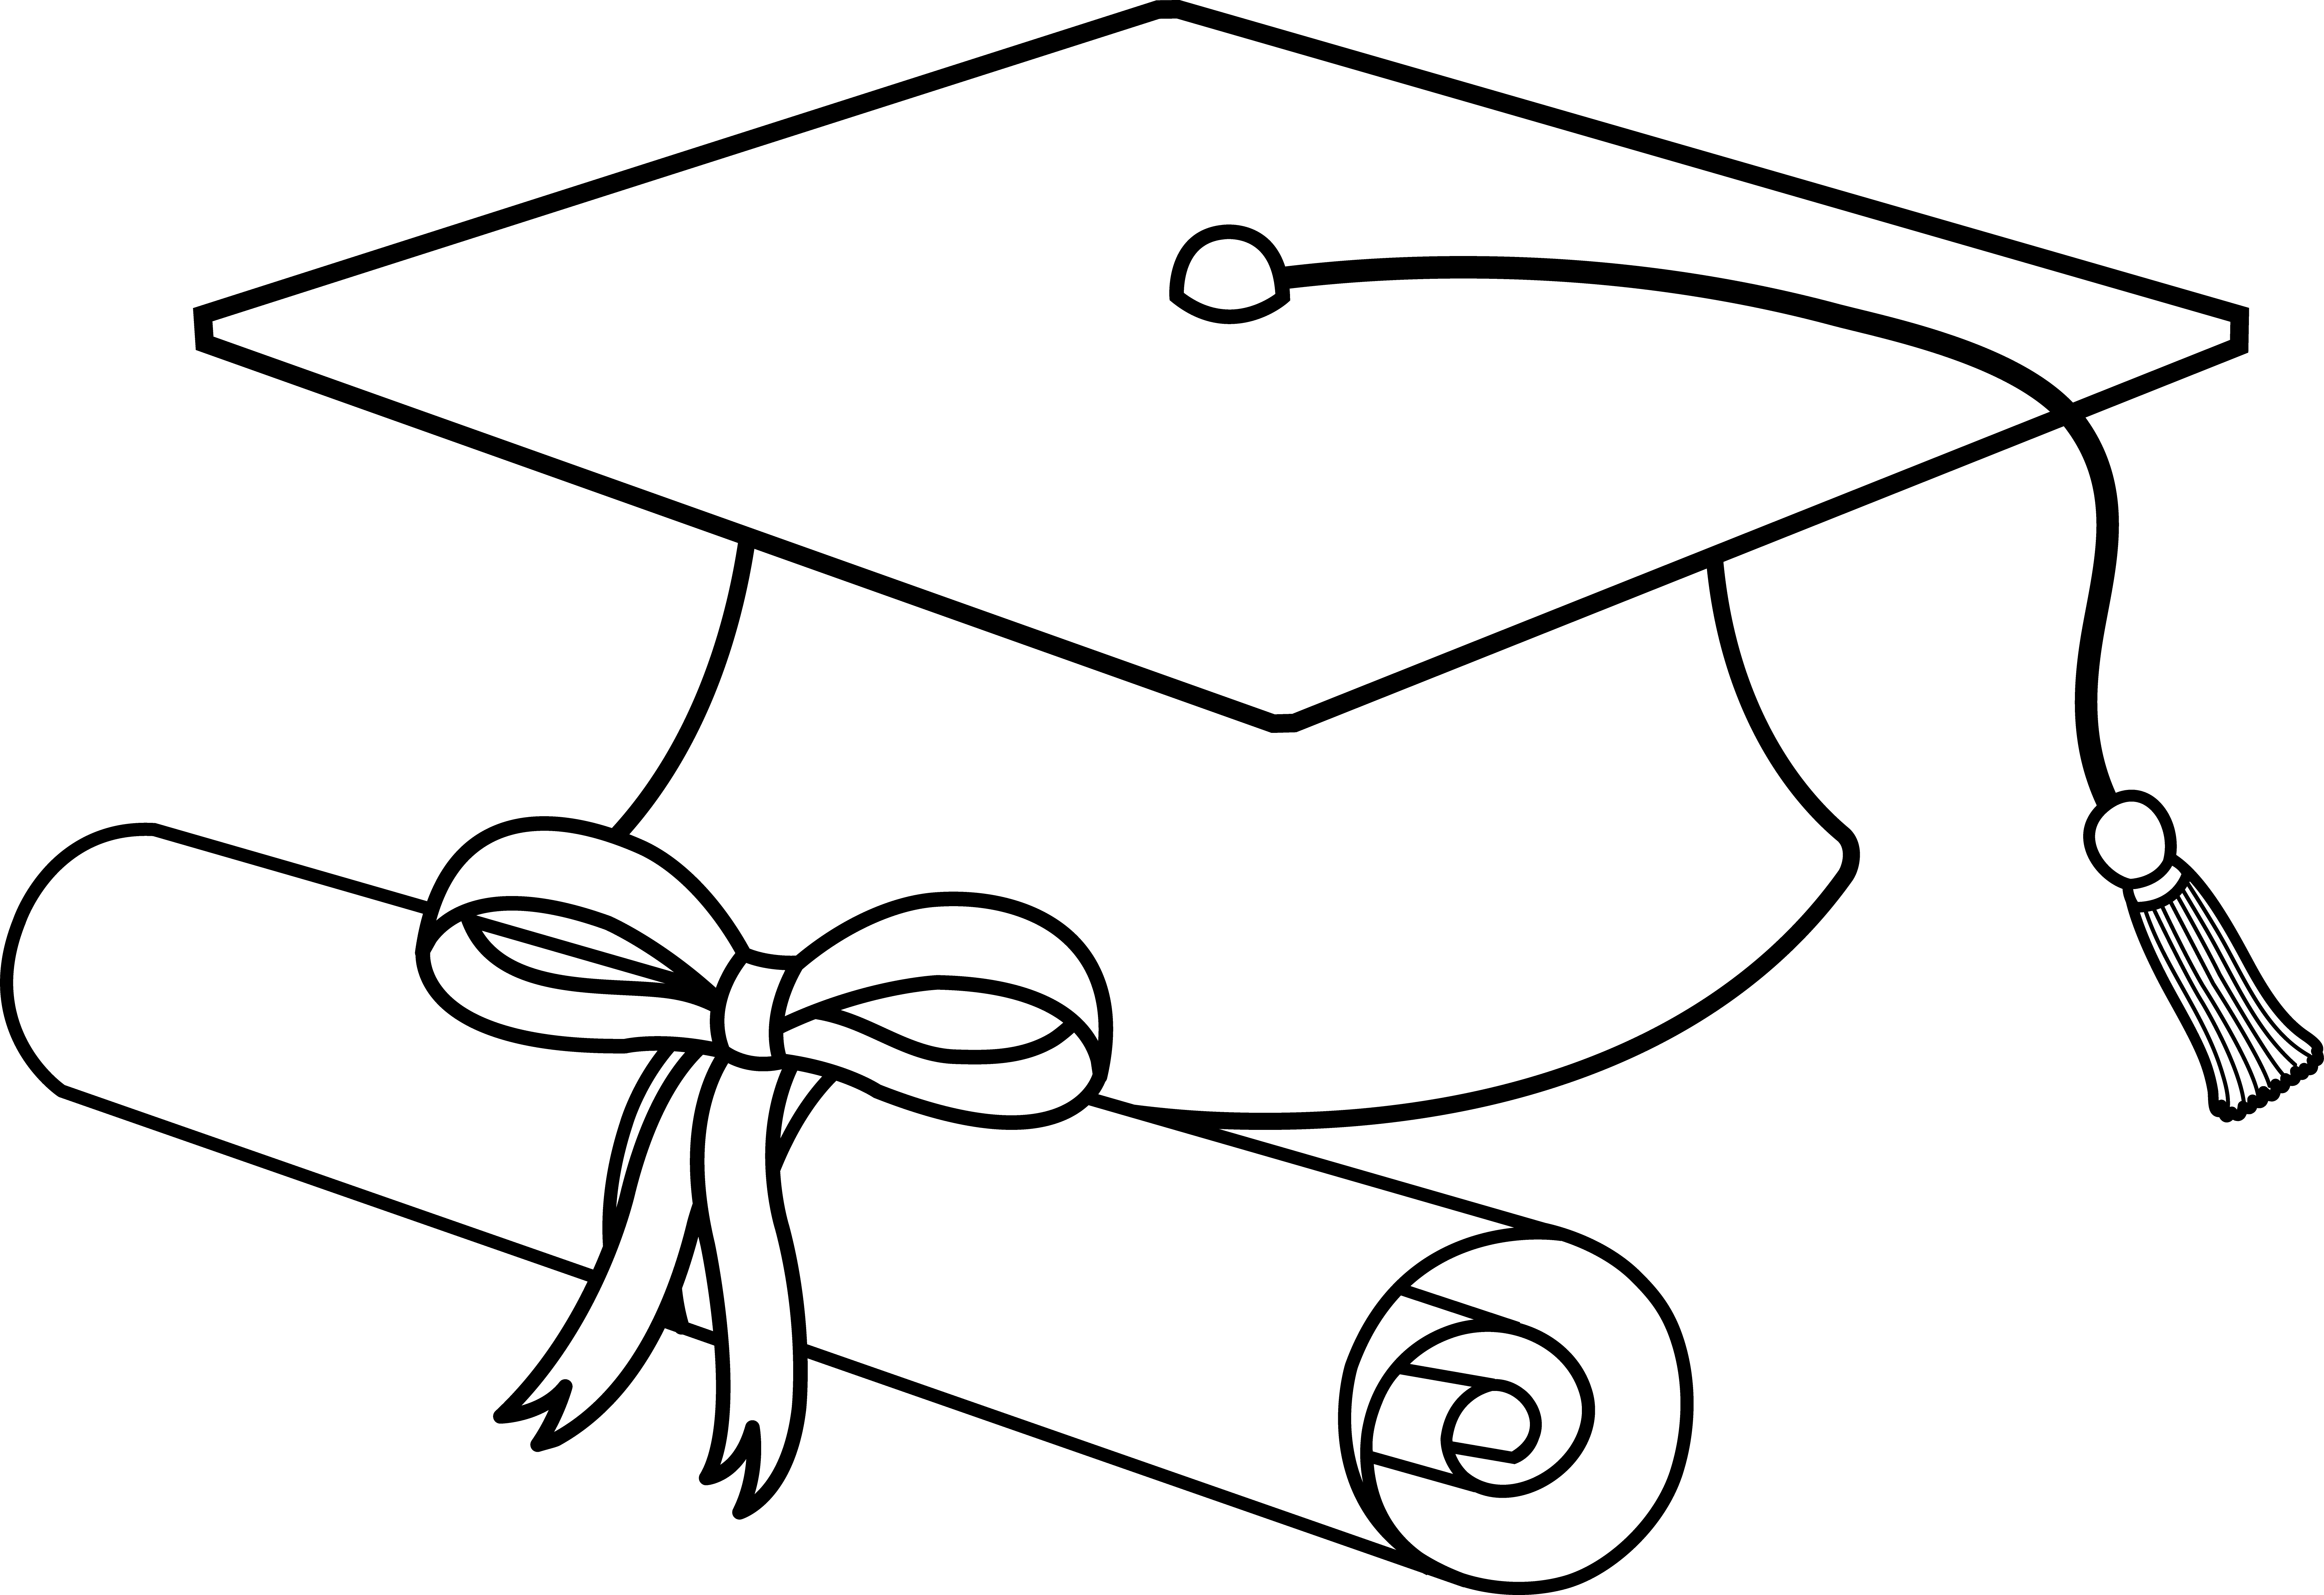 Flying caps clip art. Smiley clipart graduation